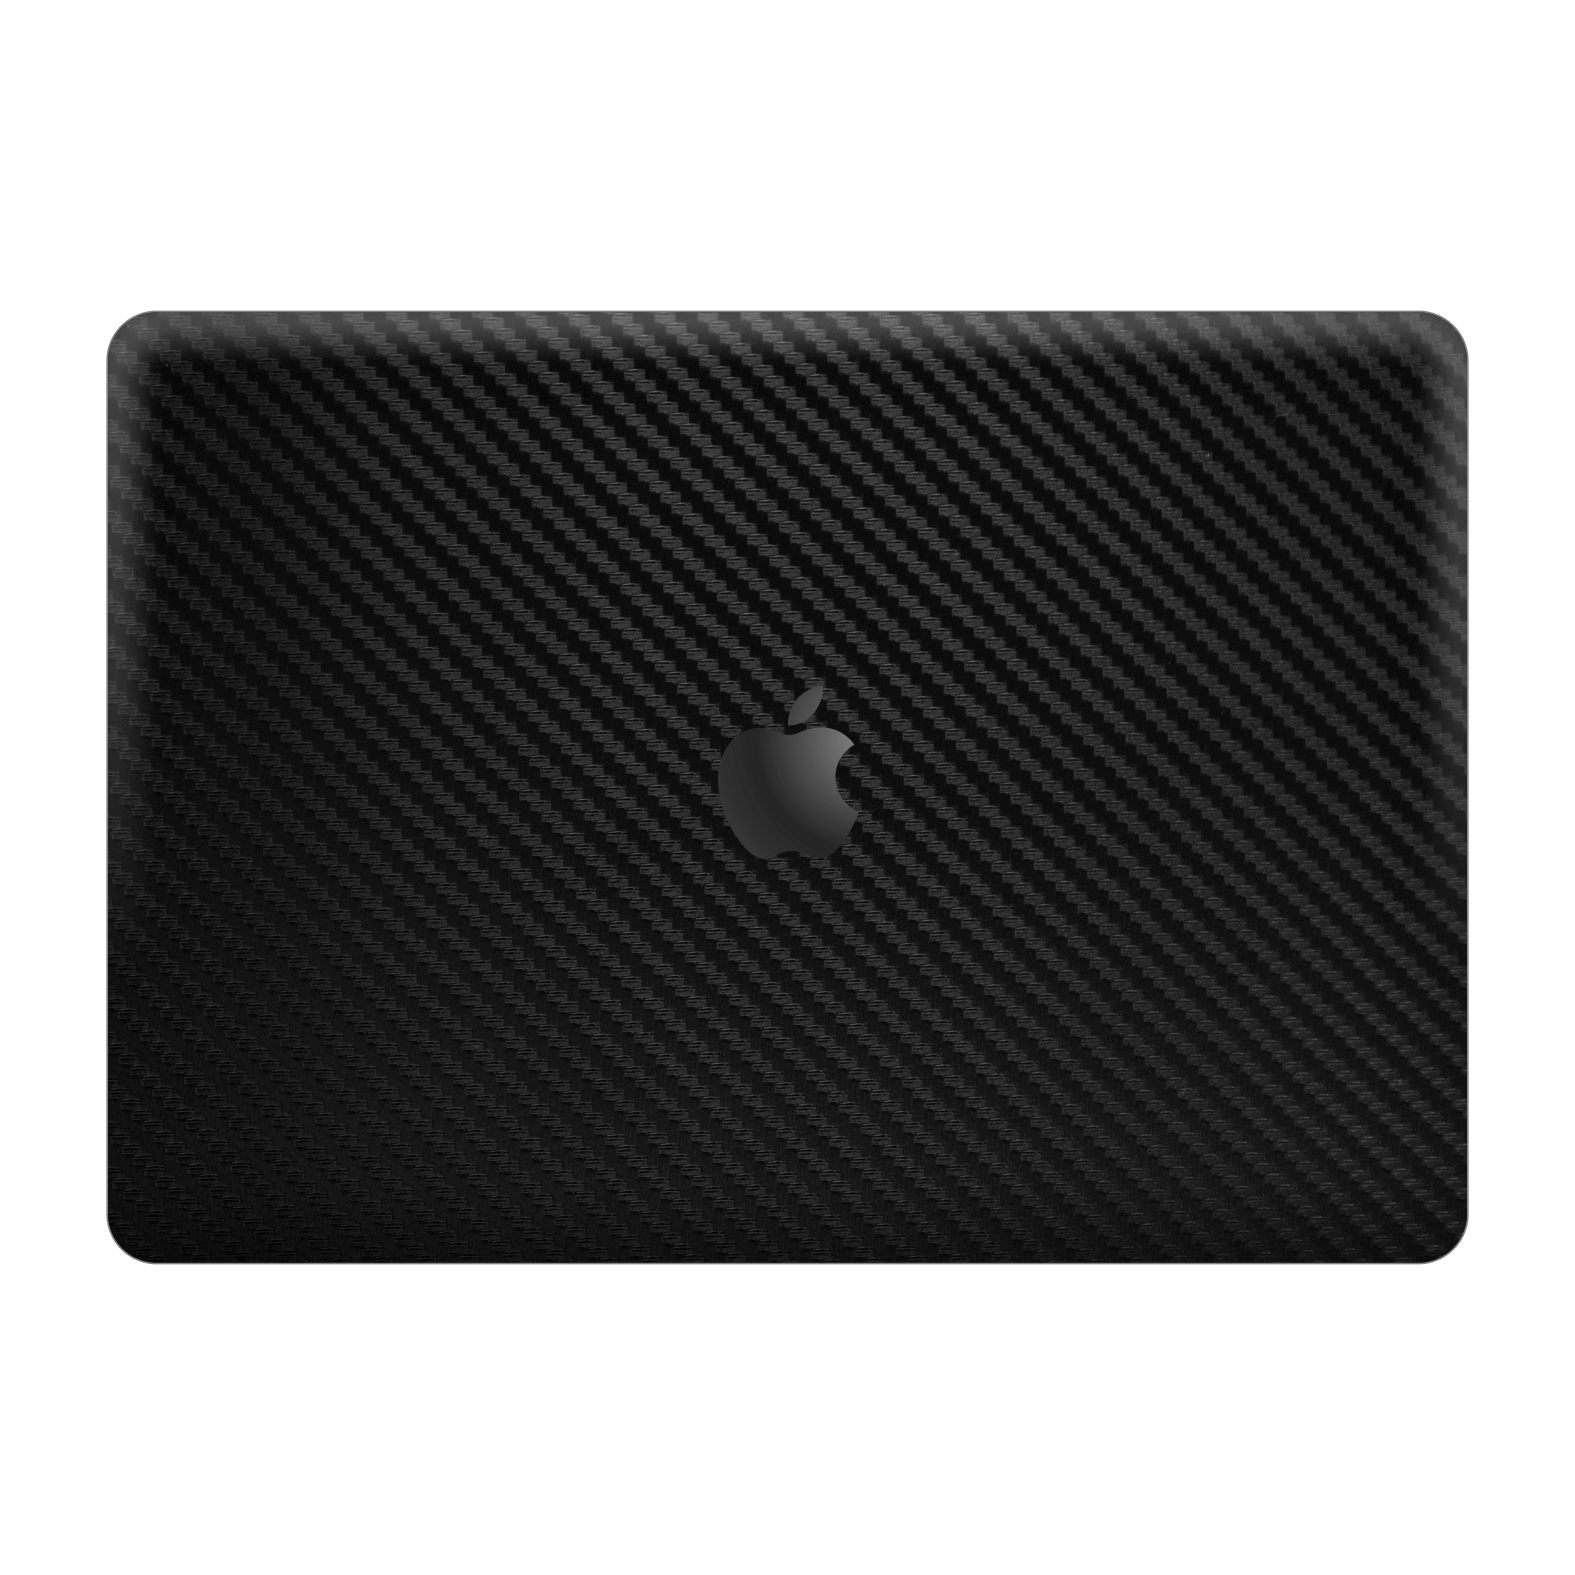 MacBook Pro 13" (2020/2022) M1, M2, Black 3D Textured Carbon Fibre Fiber Skin Wrap Sticker Decal Cover Protector by EasySkinz | EasySkinz.com